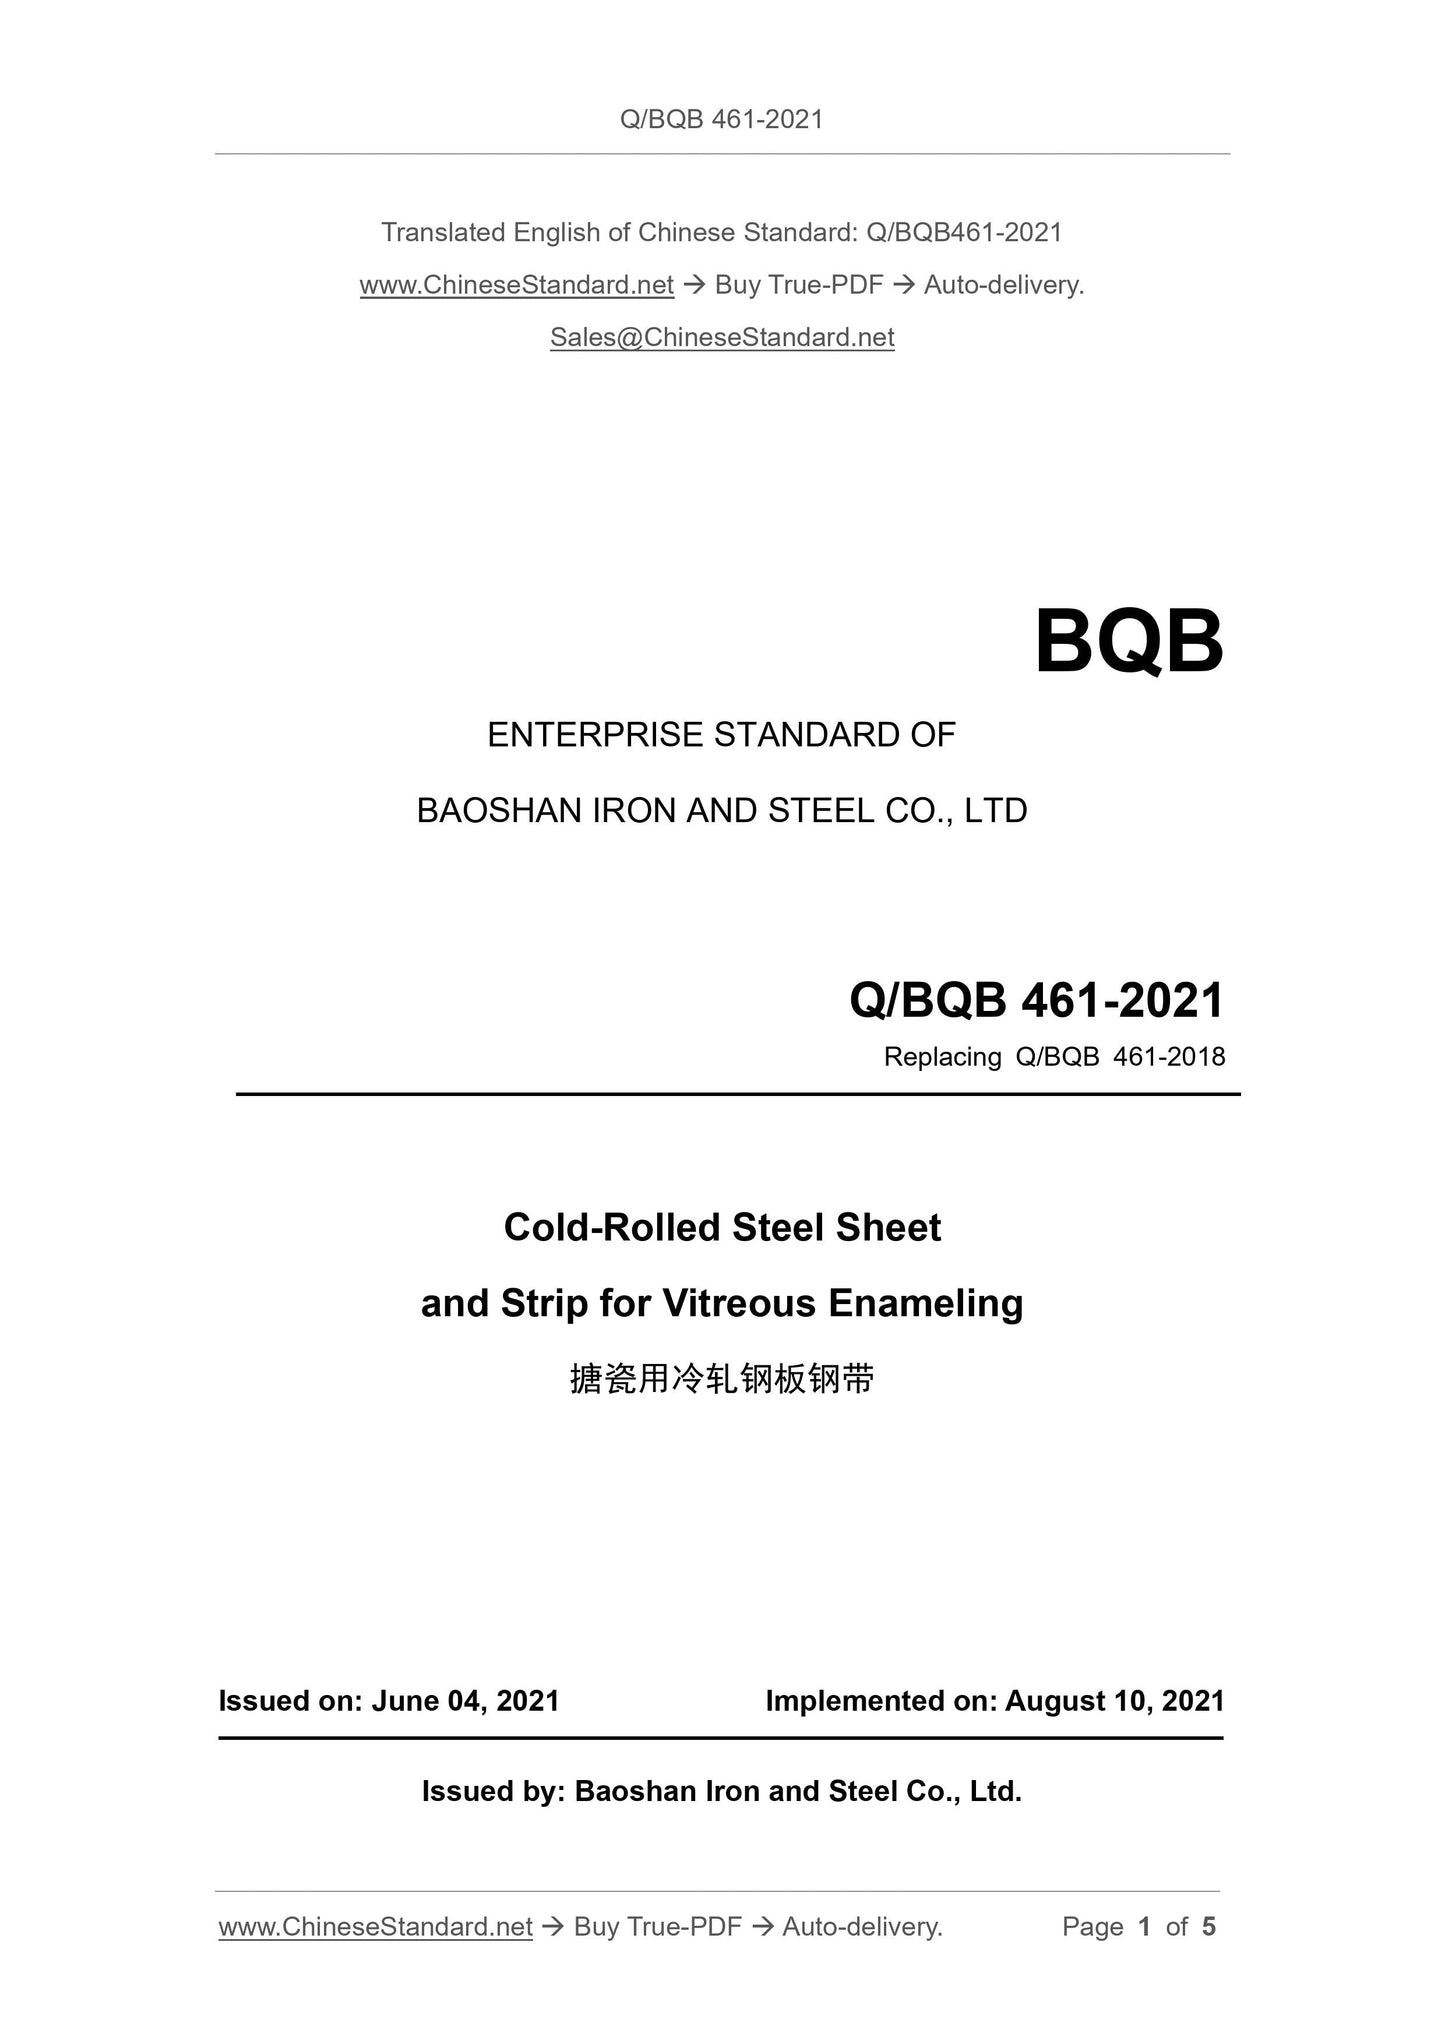 Q/BQB 461-2021 Page 1